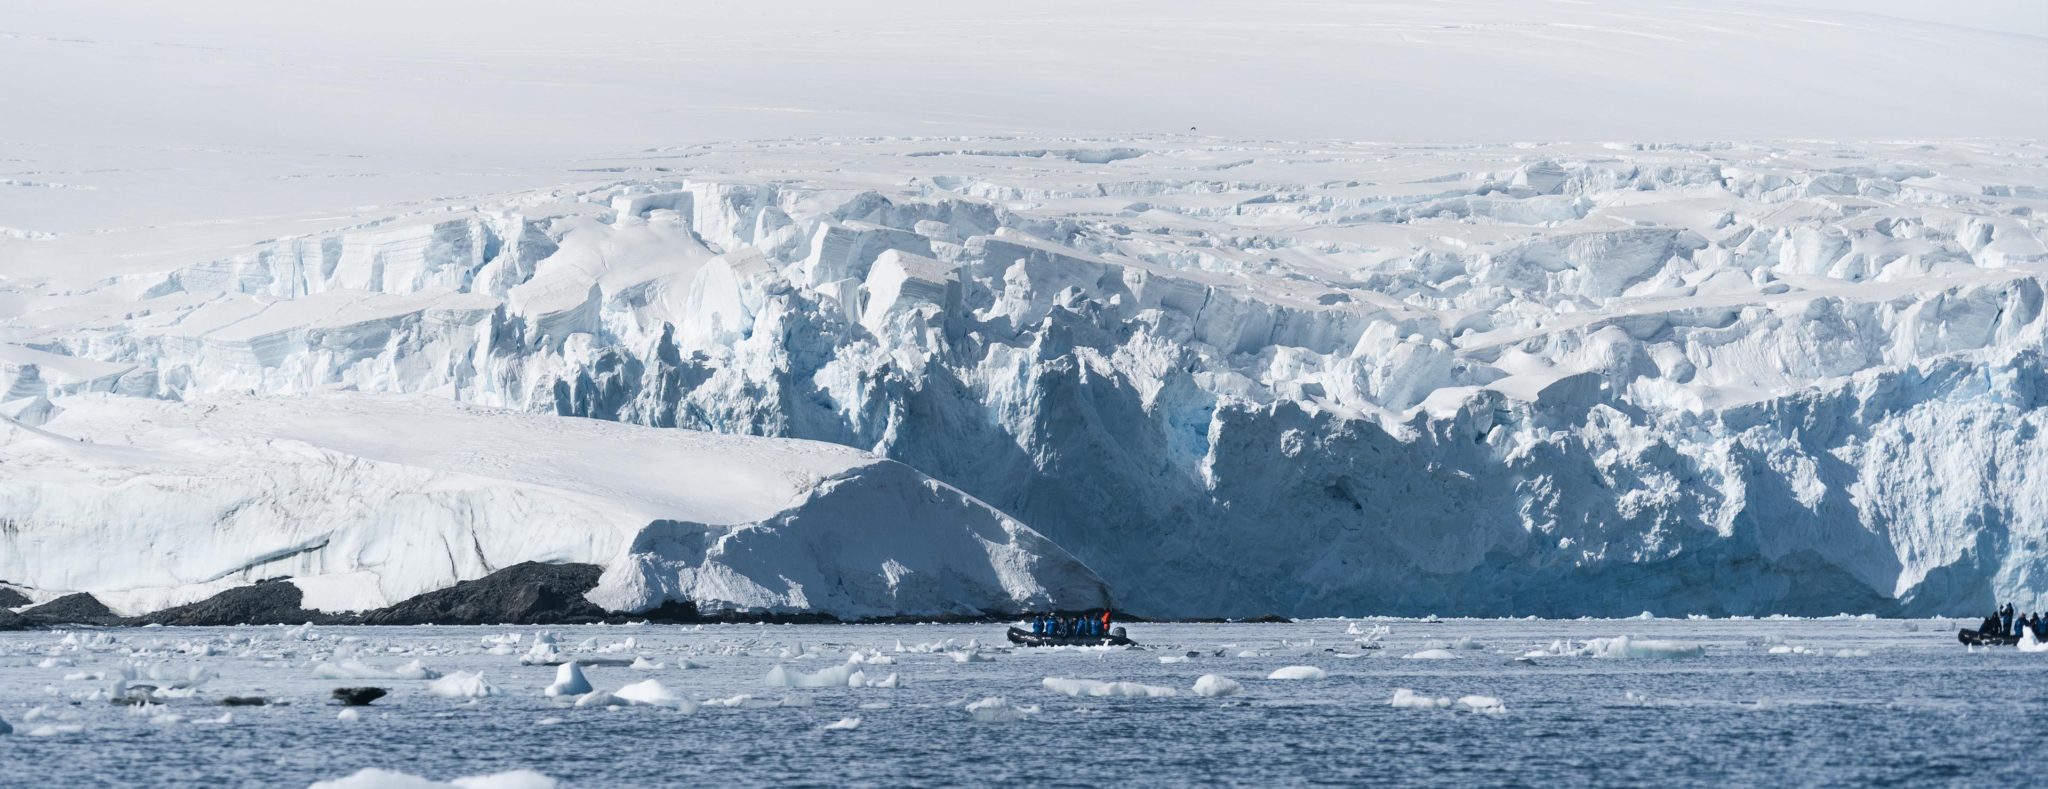 Zodiac expeditie op het Antarctisch schiereiland